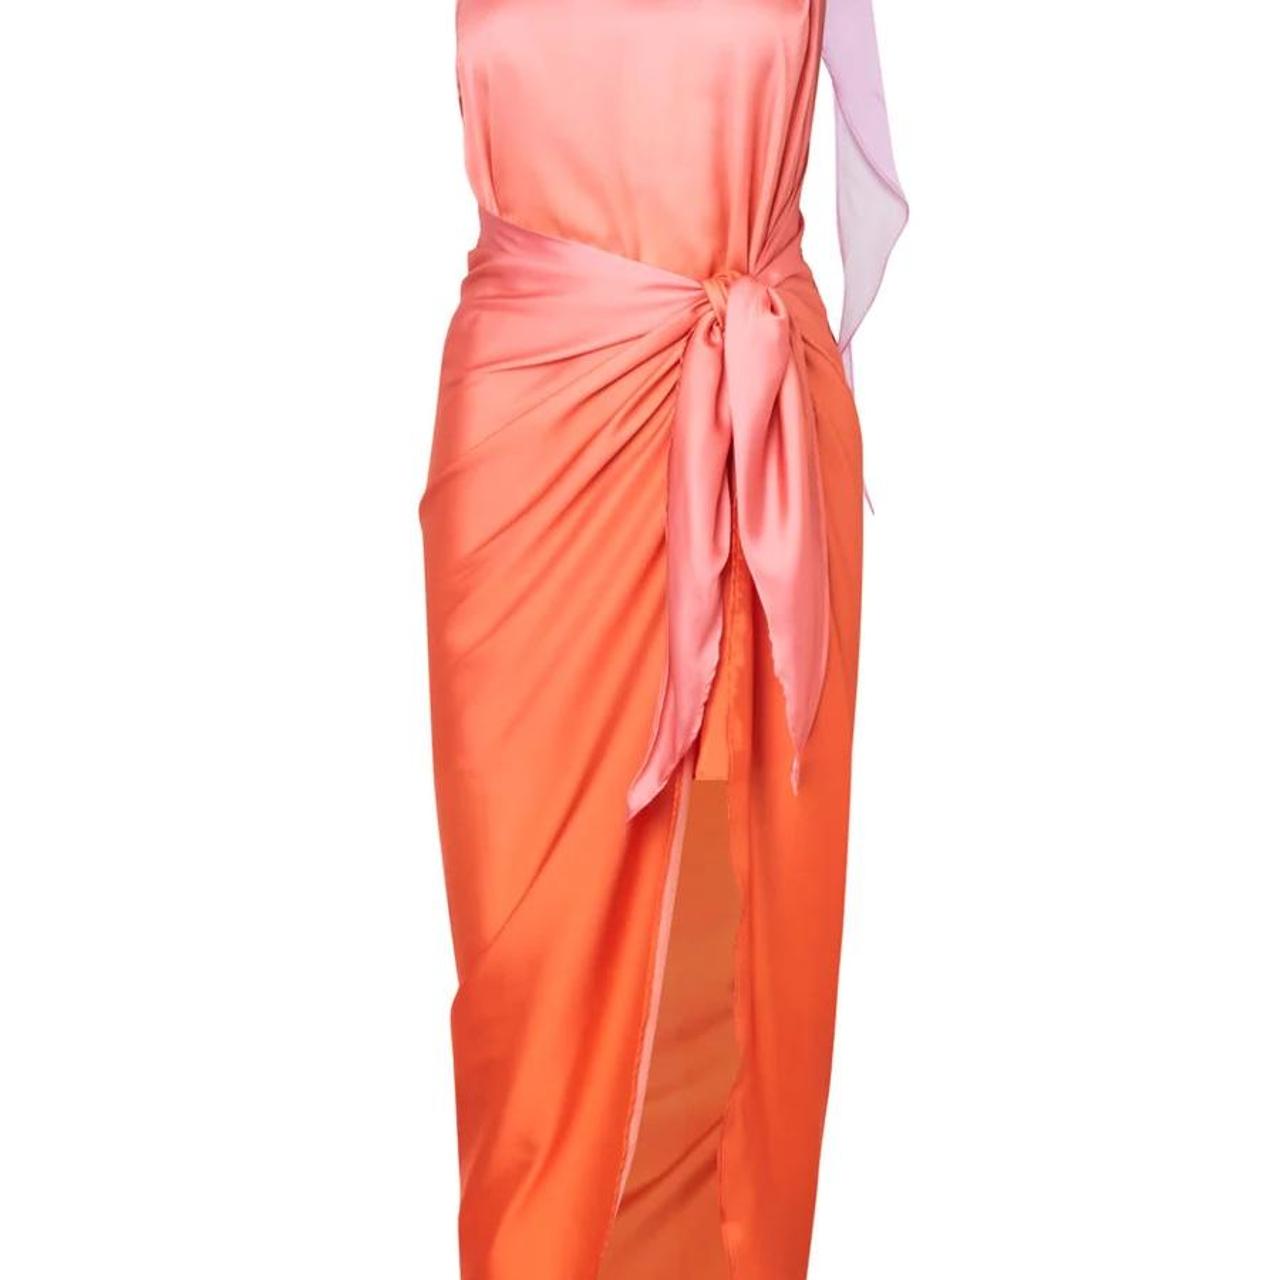 Baobab Women's Orange and Pink Dress (3)